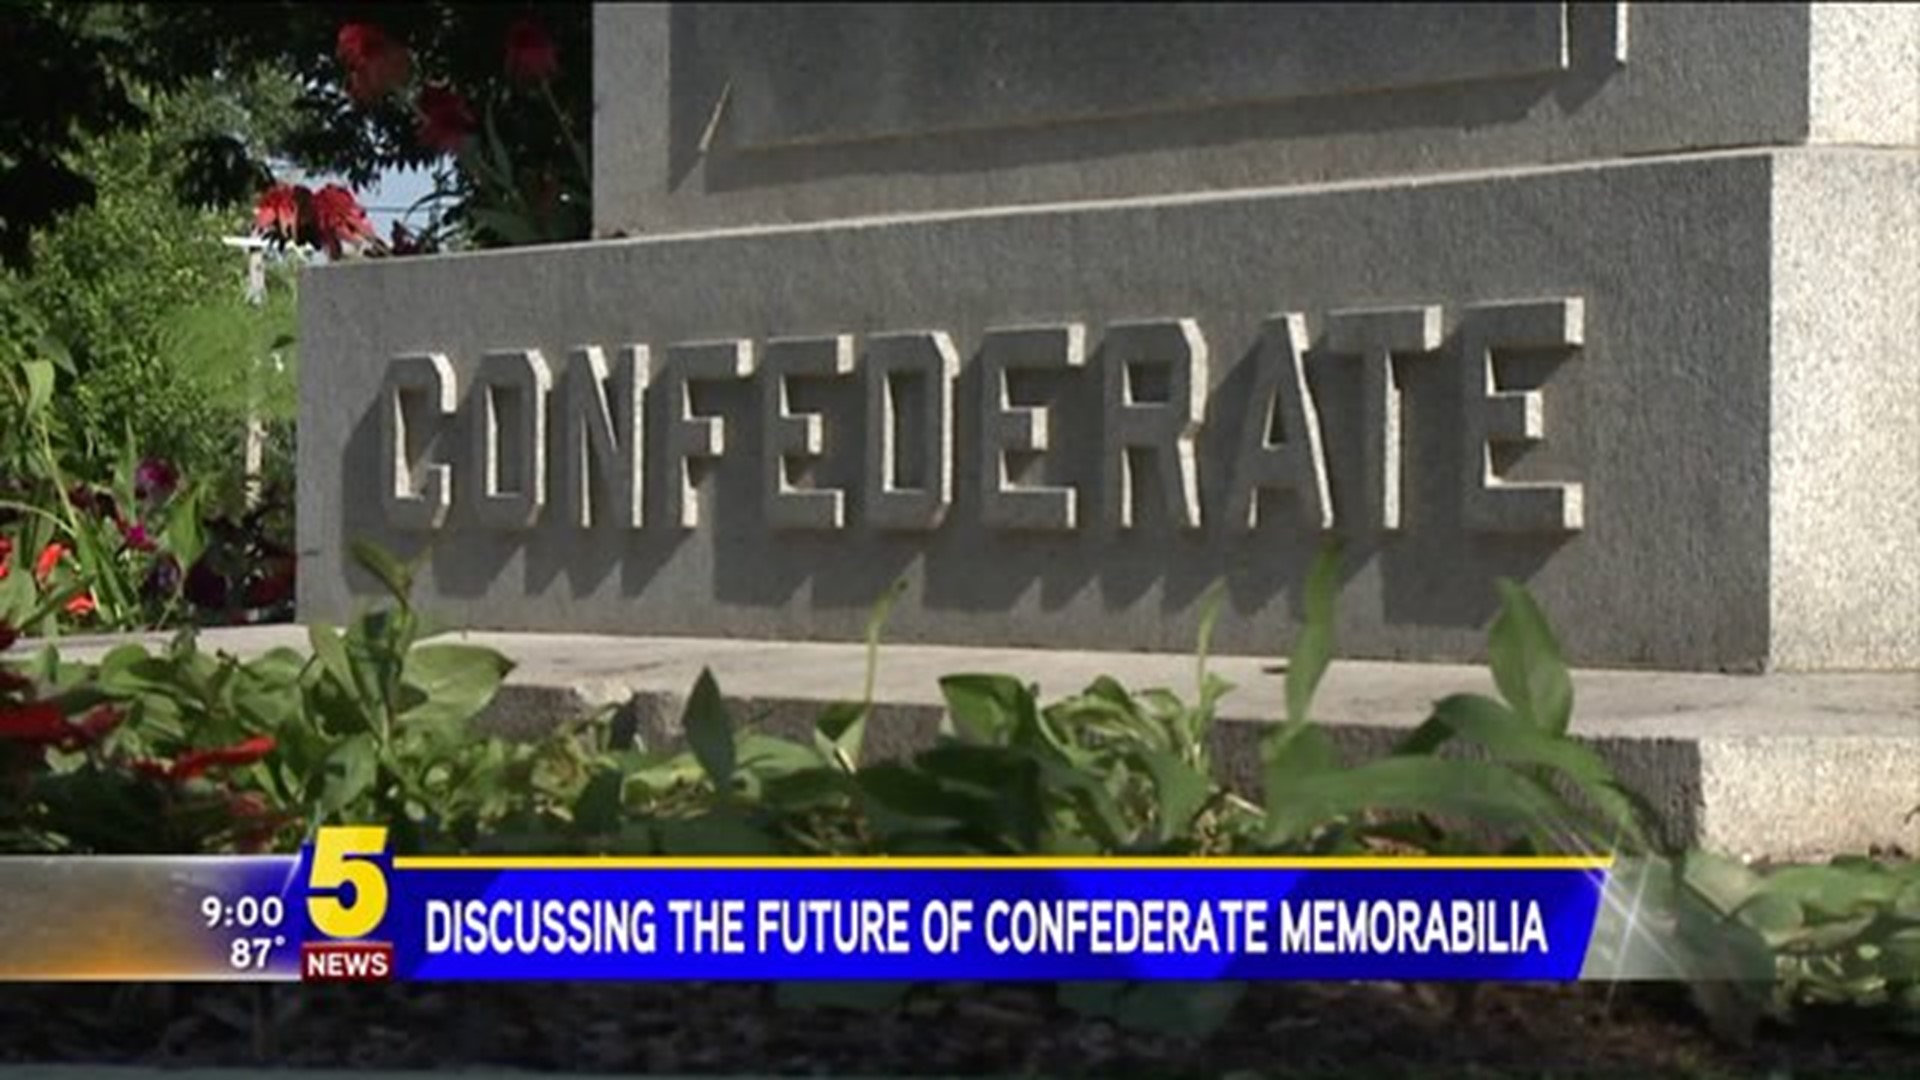 Discussing the future of Confederate memorabilia